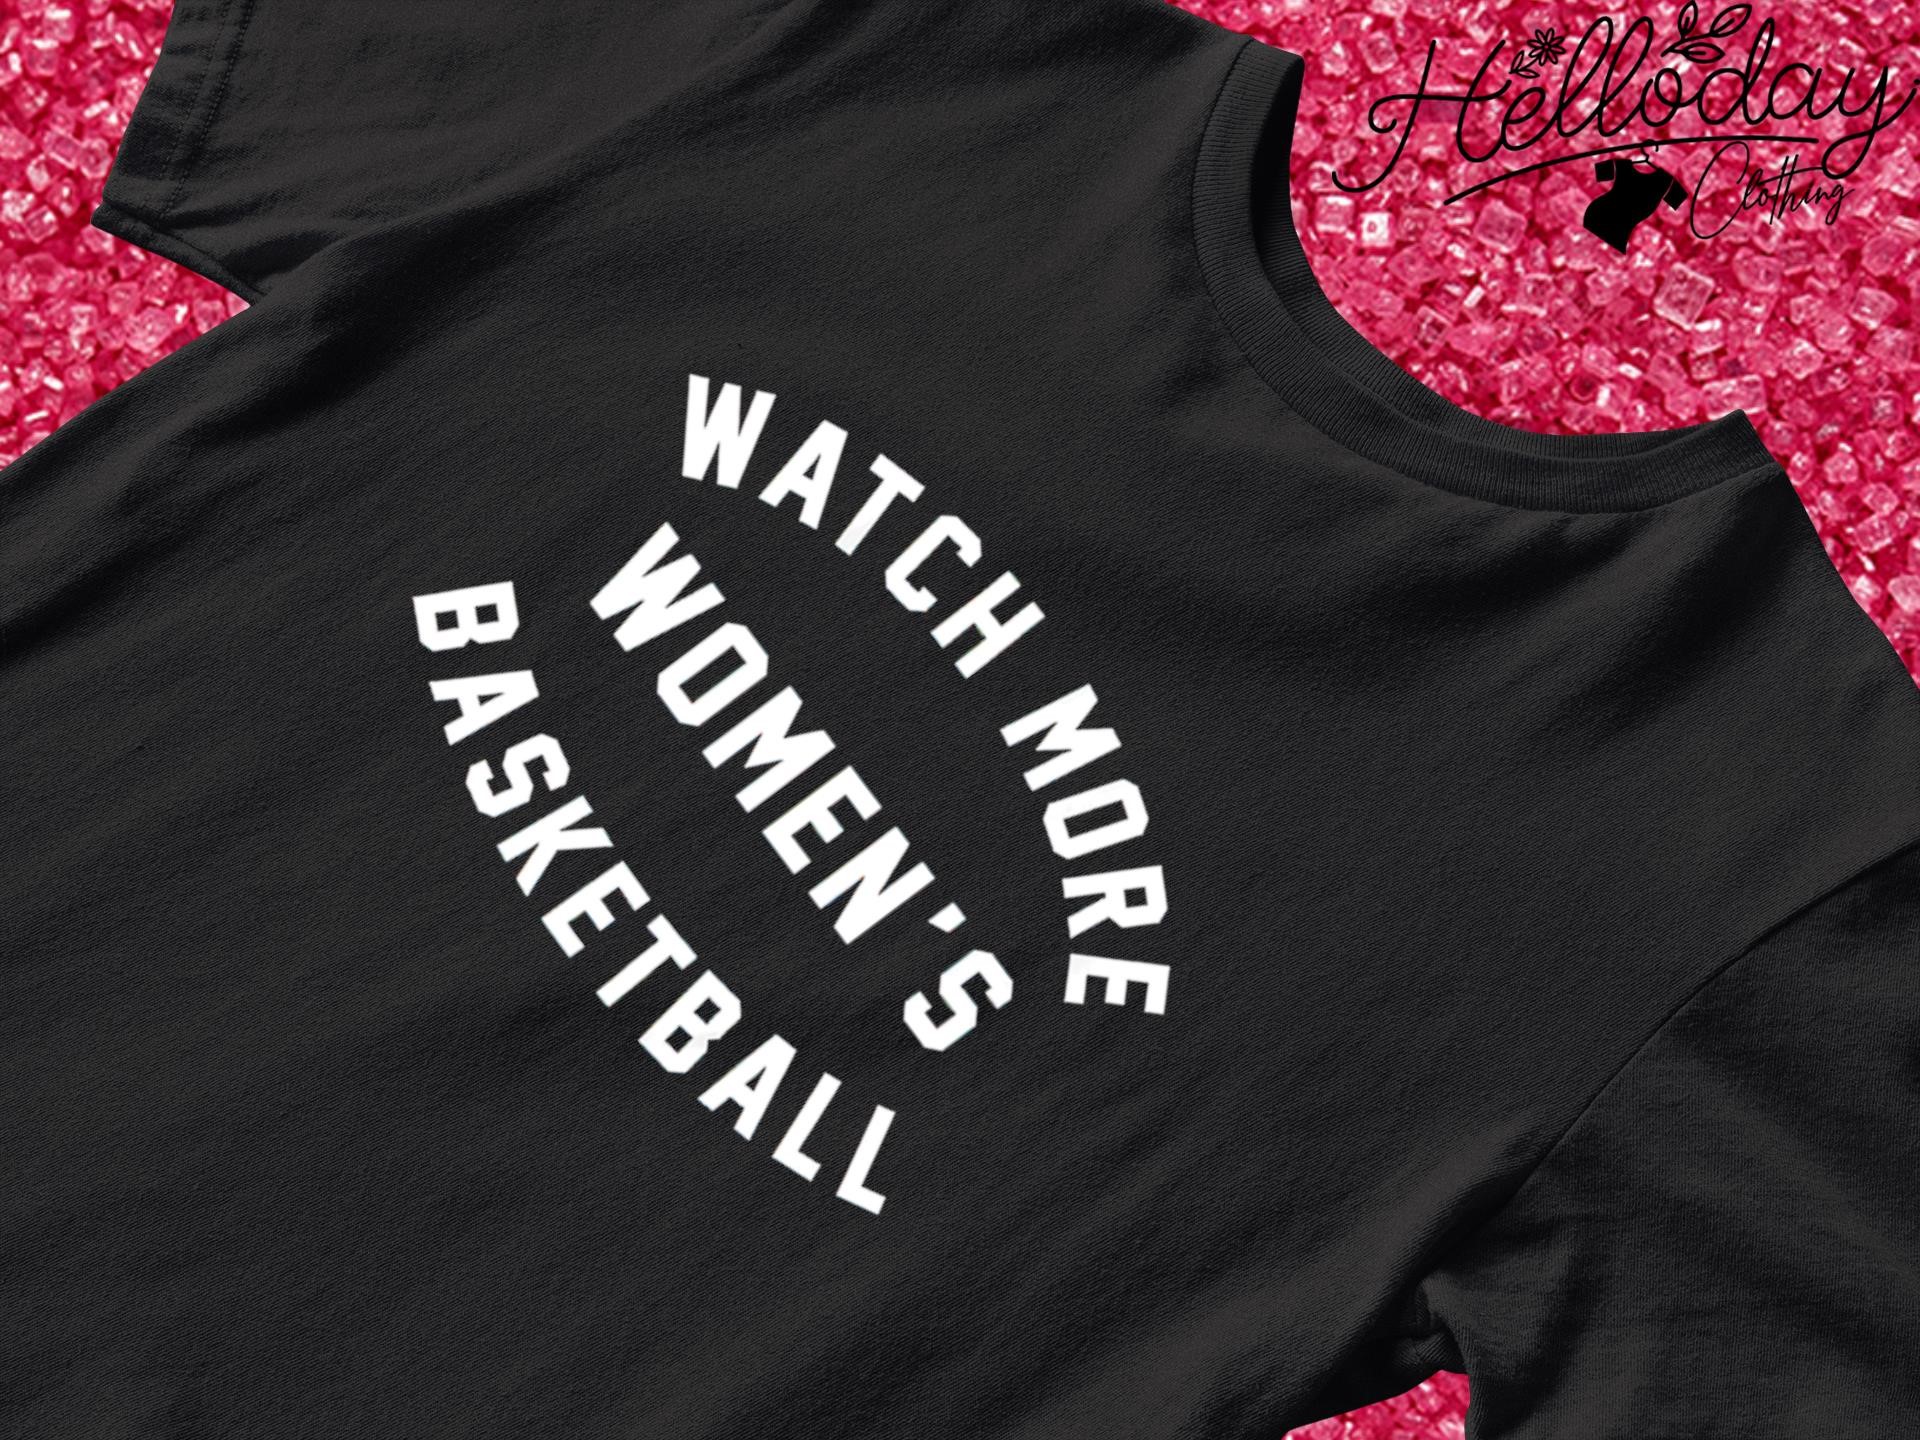 Watch more women's basketball T-shirt